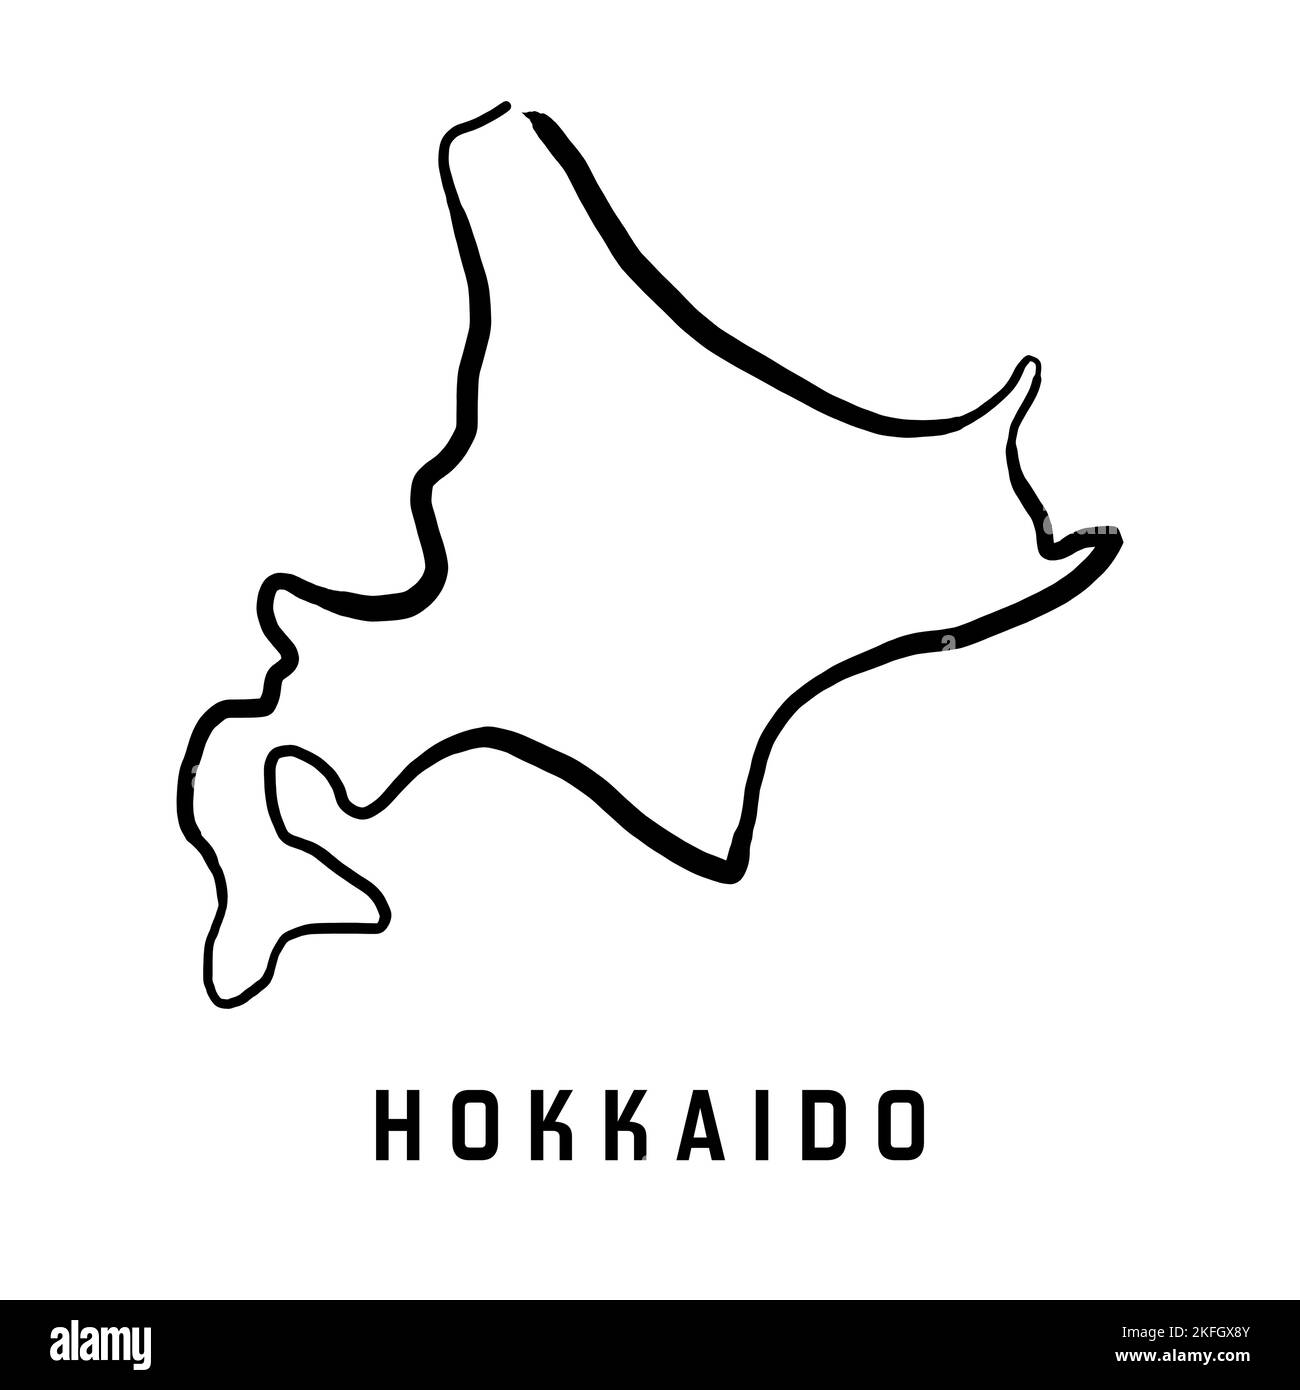 Hokkaido-Inselkarte in Japan. Einfache Umrisse. Vektorgrafik handgezeichnete Karte im vereinfachten Stil. Stock Vektor